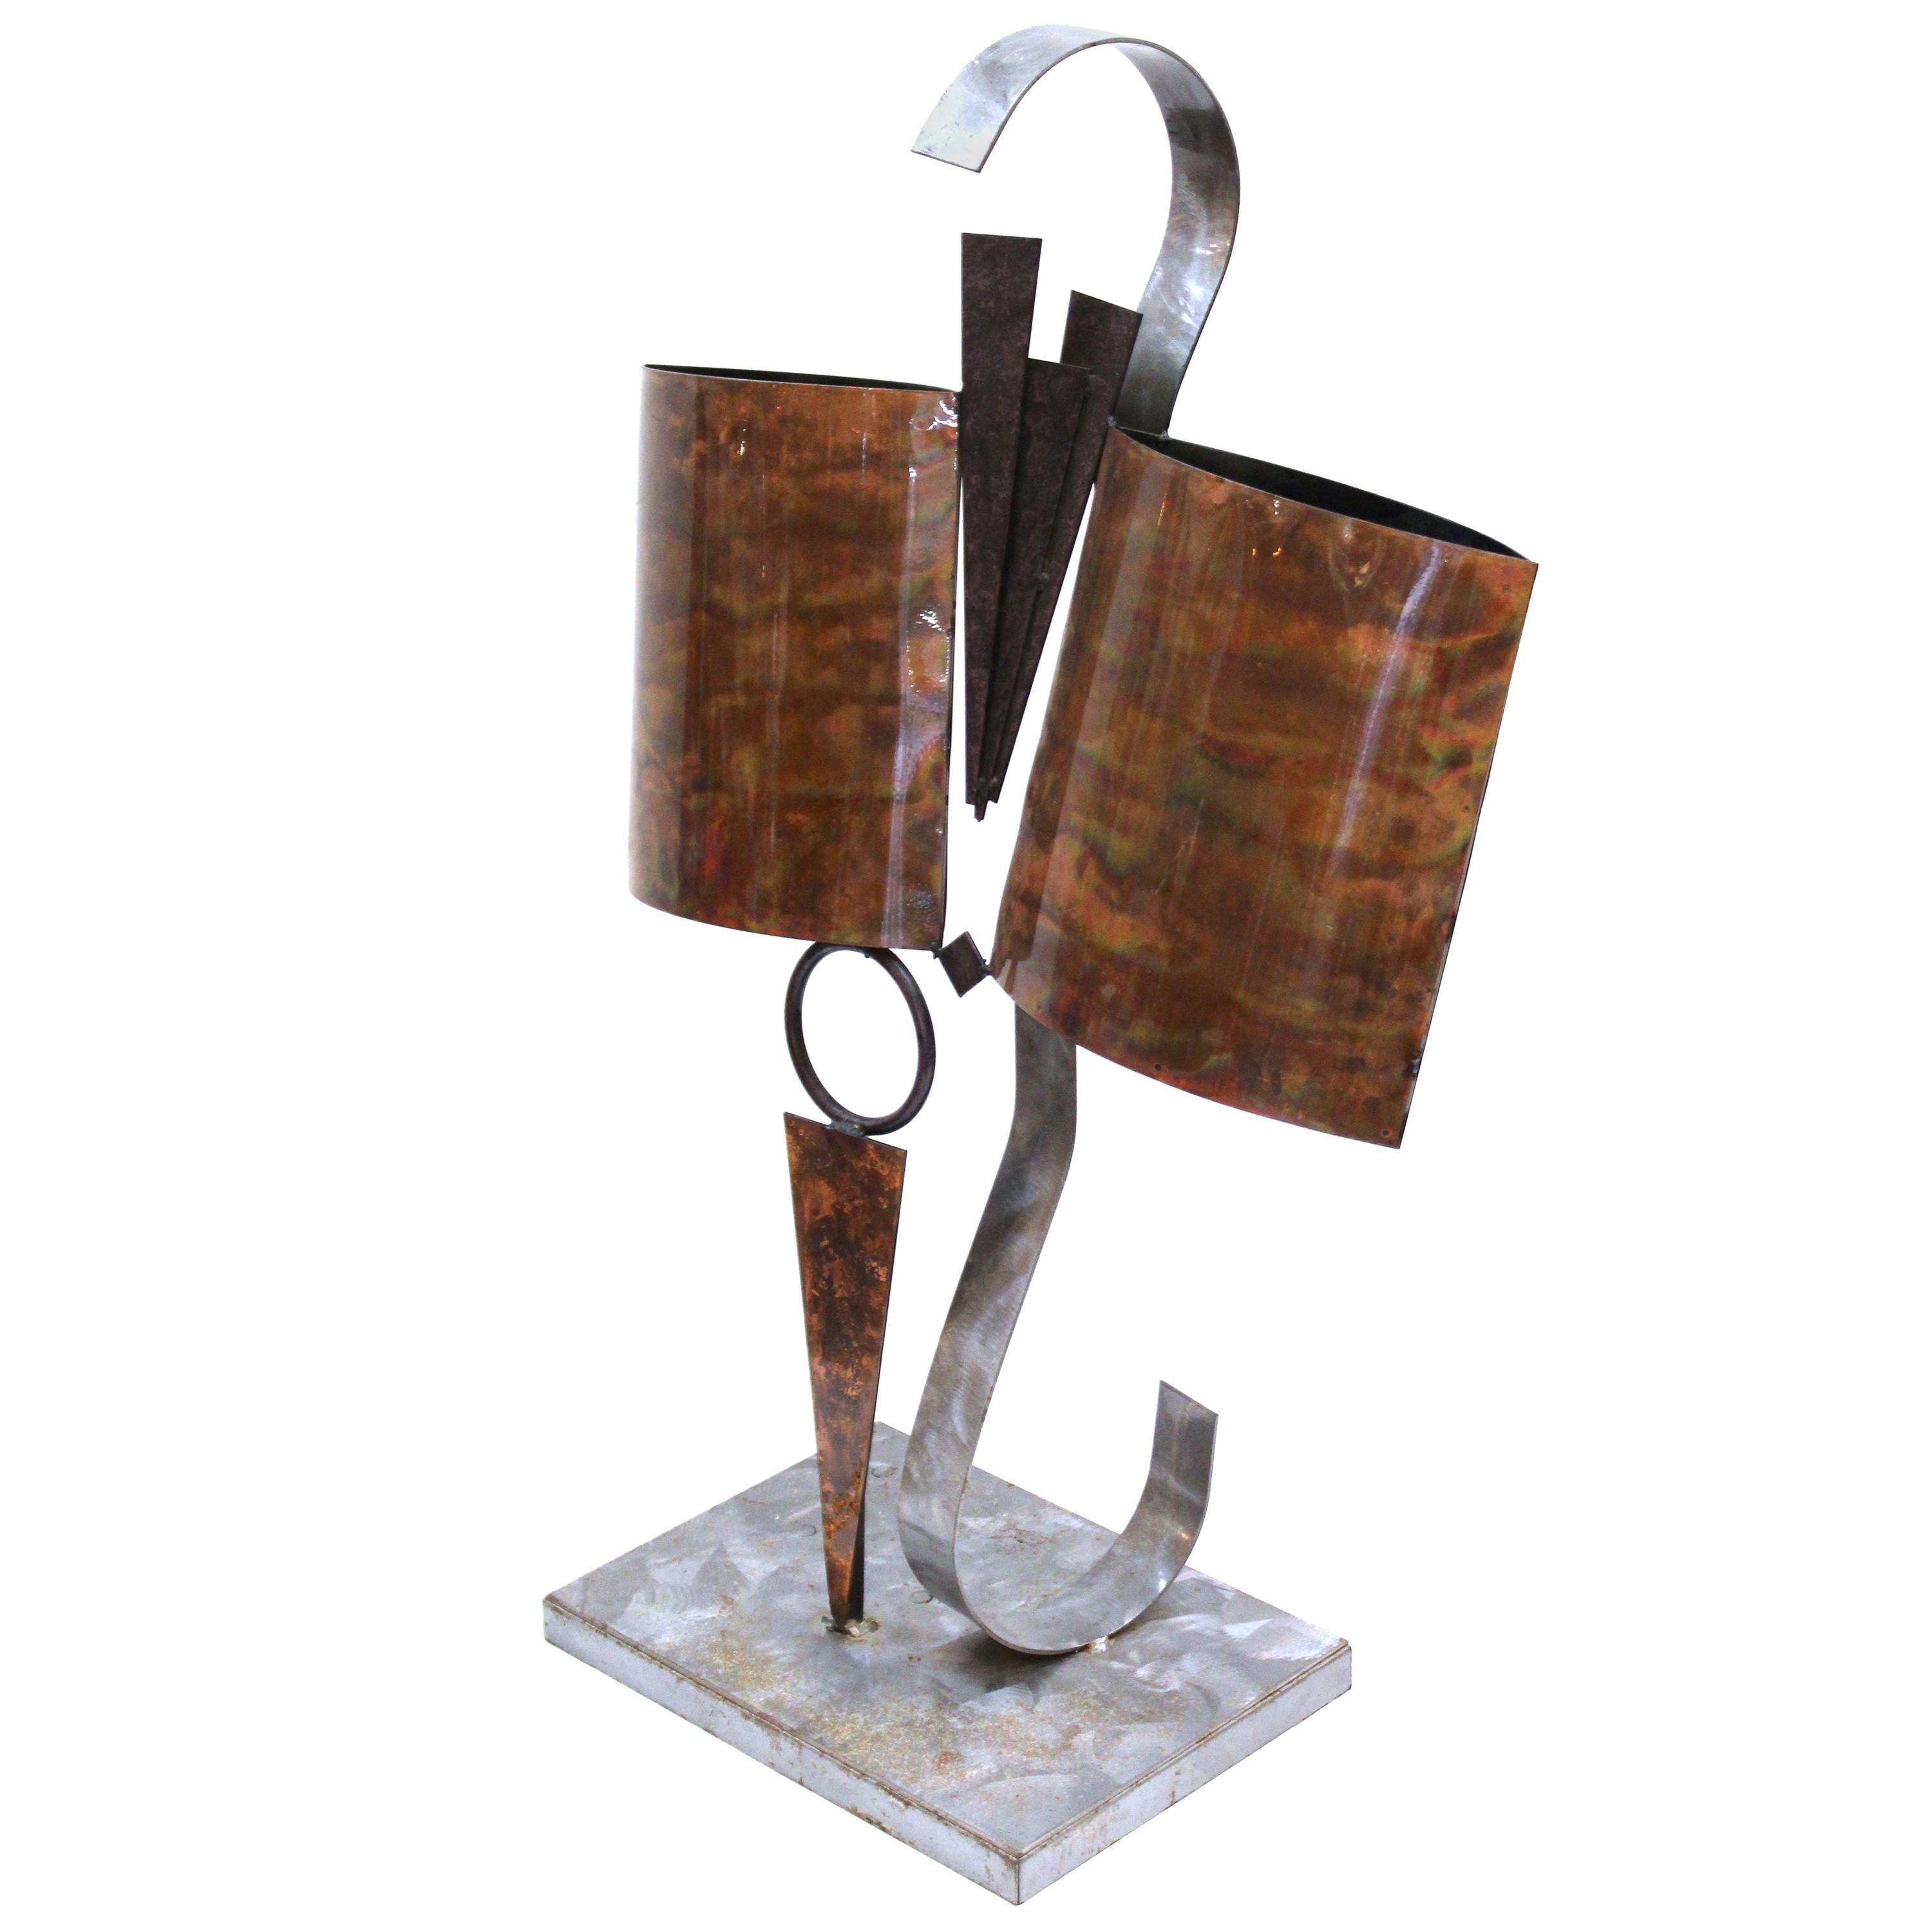 Sculpture de plateau de table moderne abstraite en métal